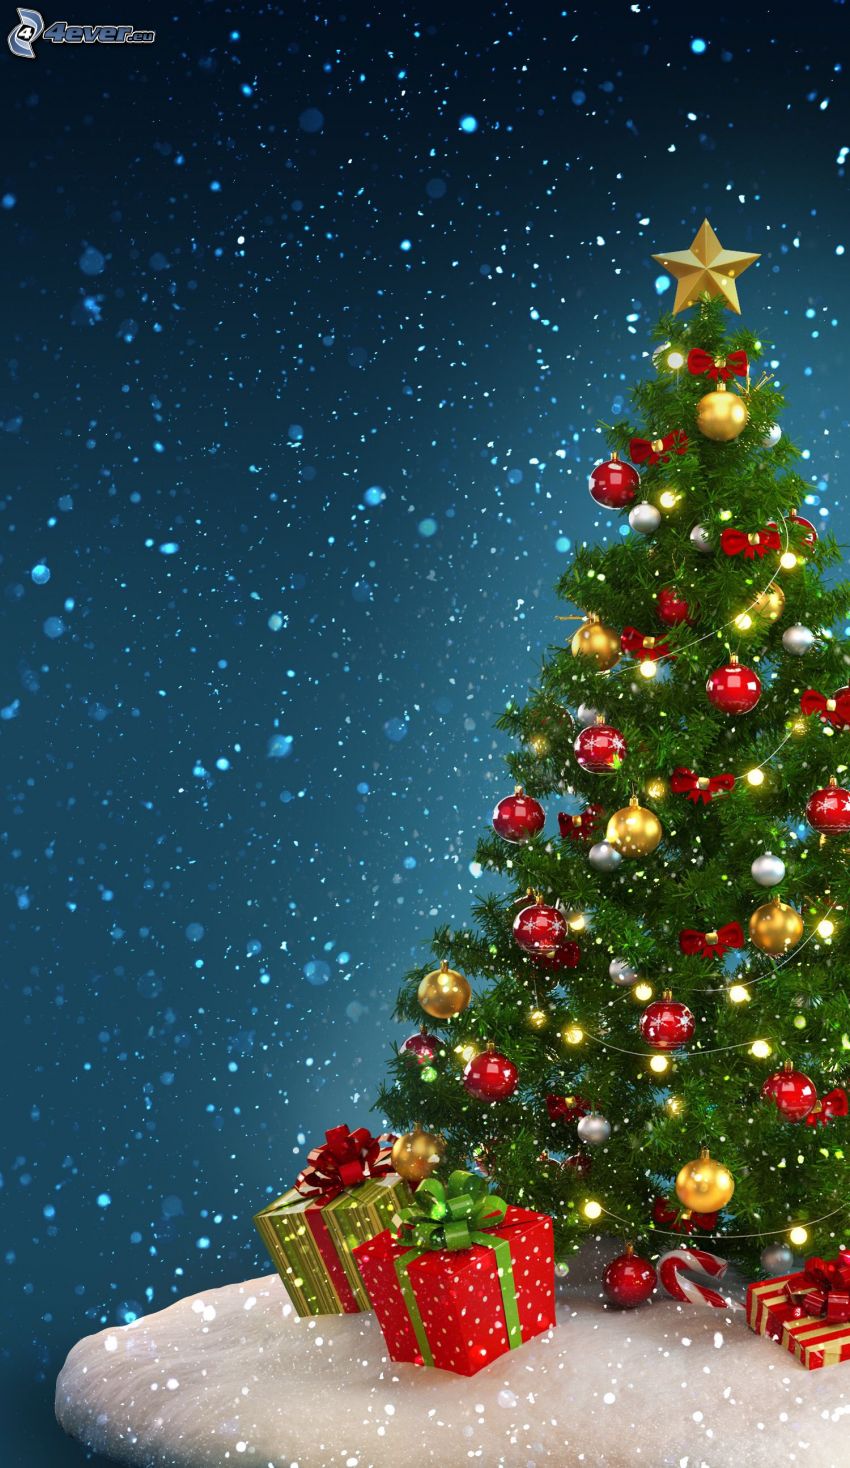 Weihnachtsbaum, Weihnachtskugeln, Geschenke, schneefall, Cartoon